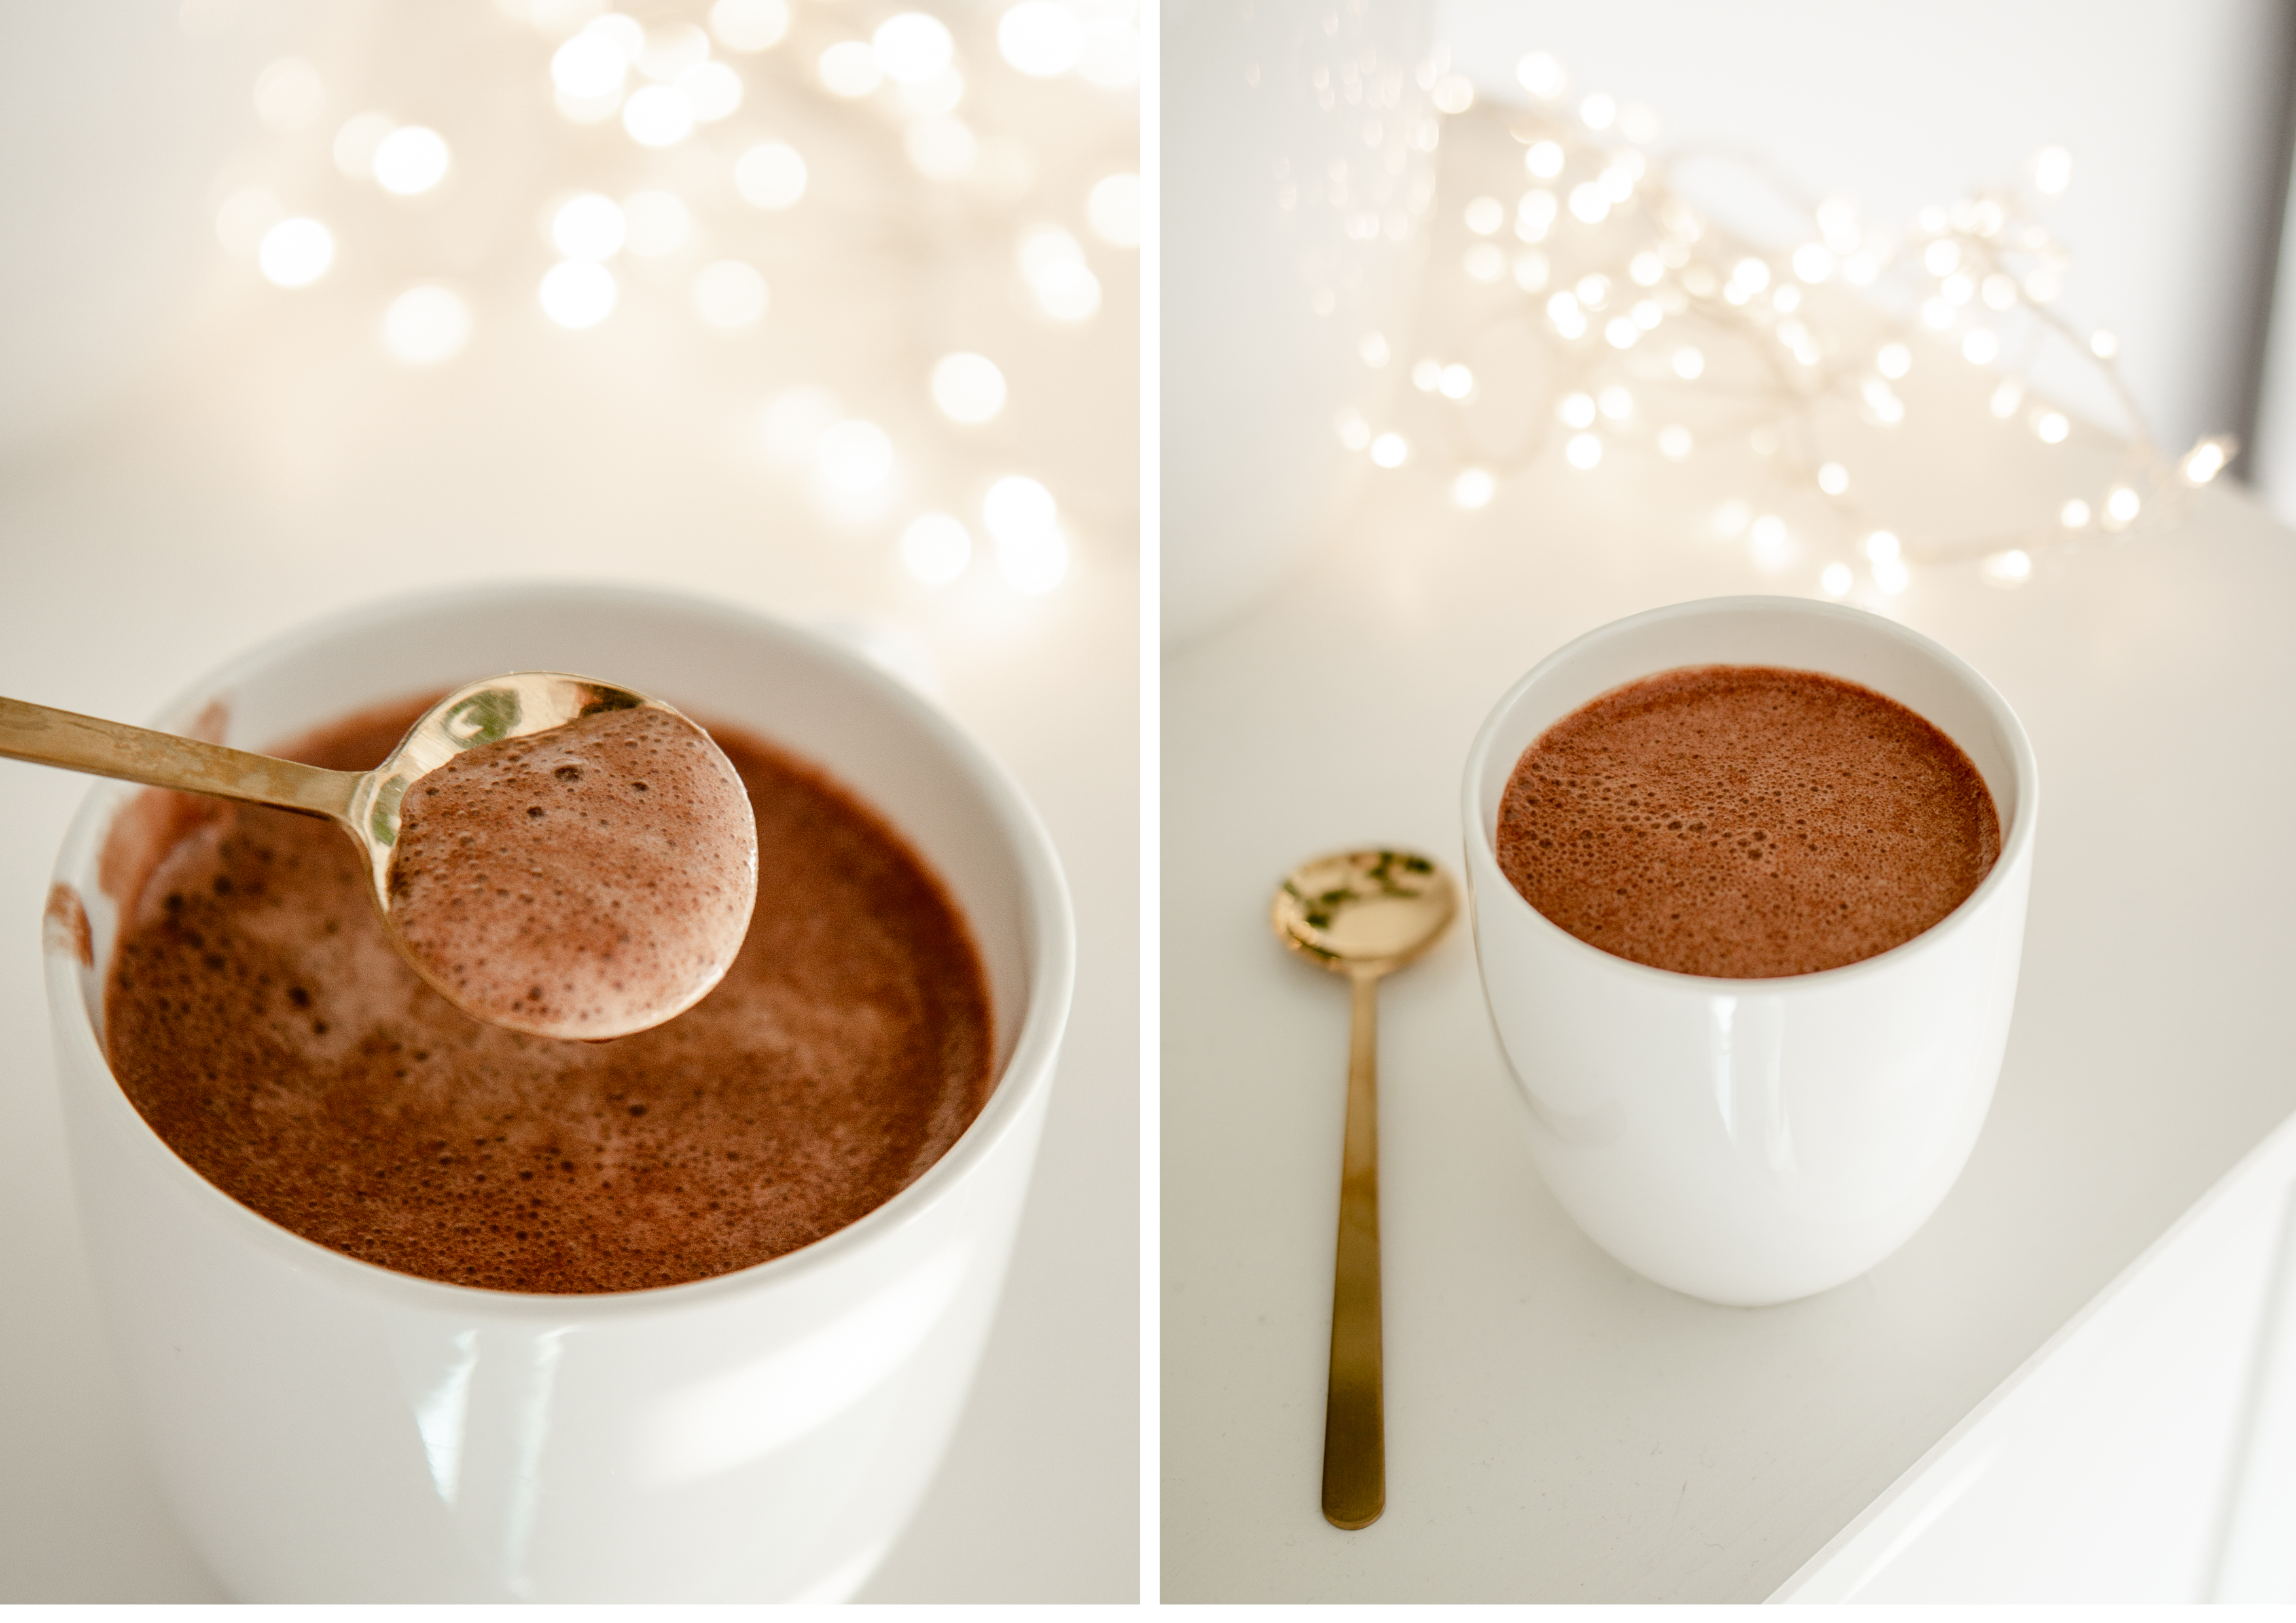 Chocolat chaud vegan spécial Noël